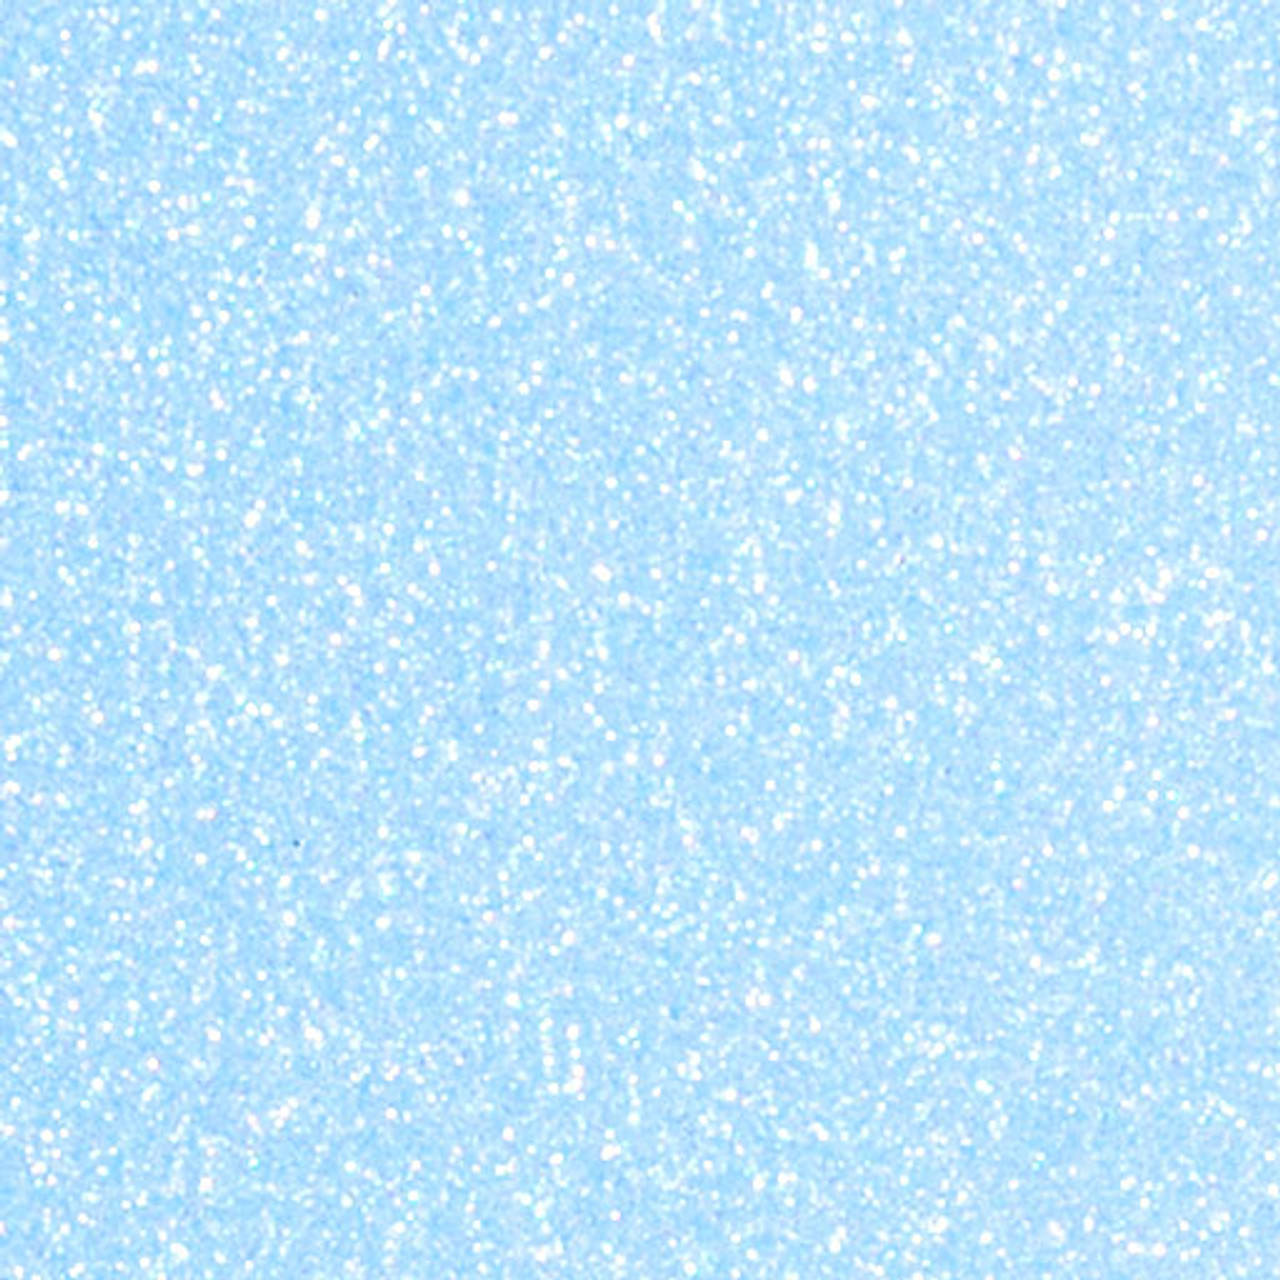 Blue Glitter htv, Royal Blue Glitter htv, 1 12x20 Royal Blue Siser Glitter  HTV, Siser Glitter Heat Transfer Vinyl, Royal Blue Glitter HTV